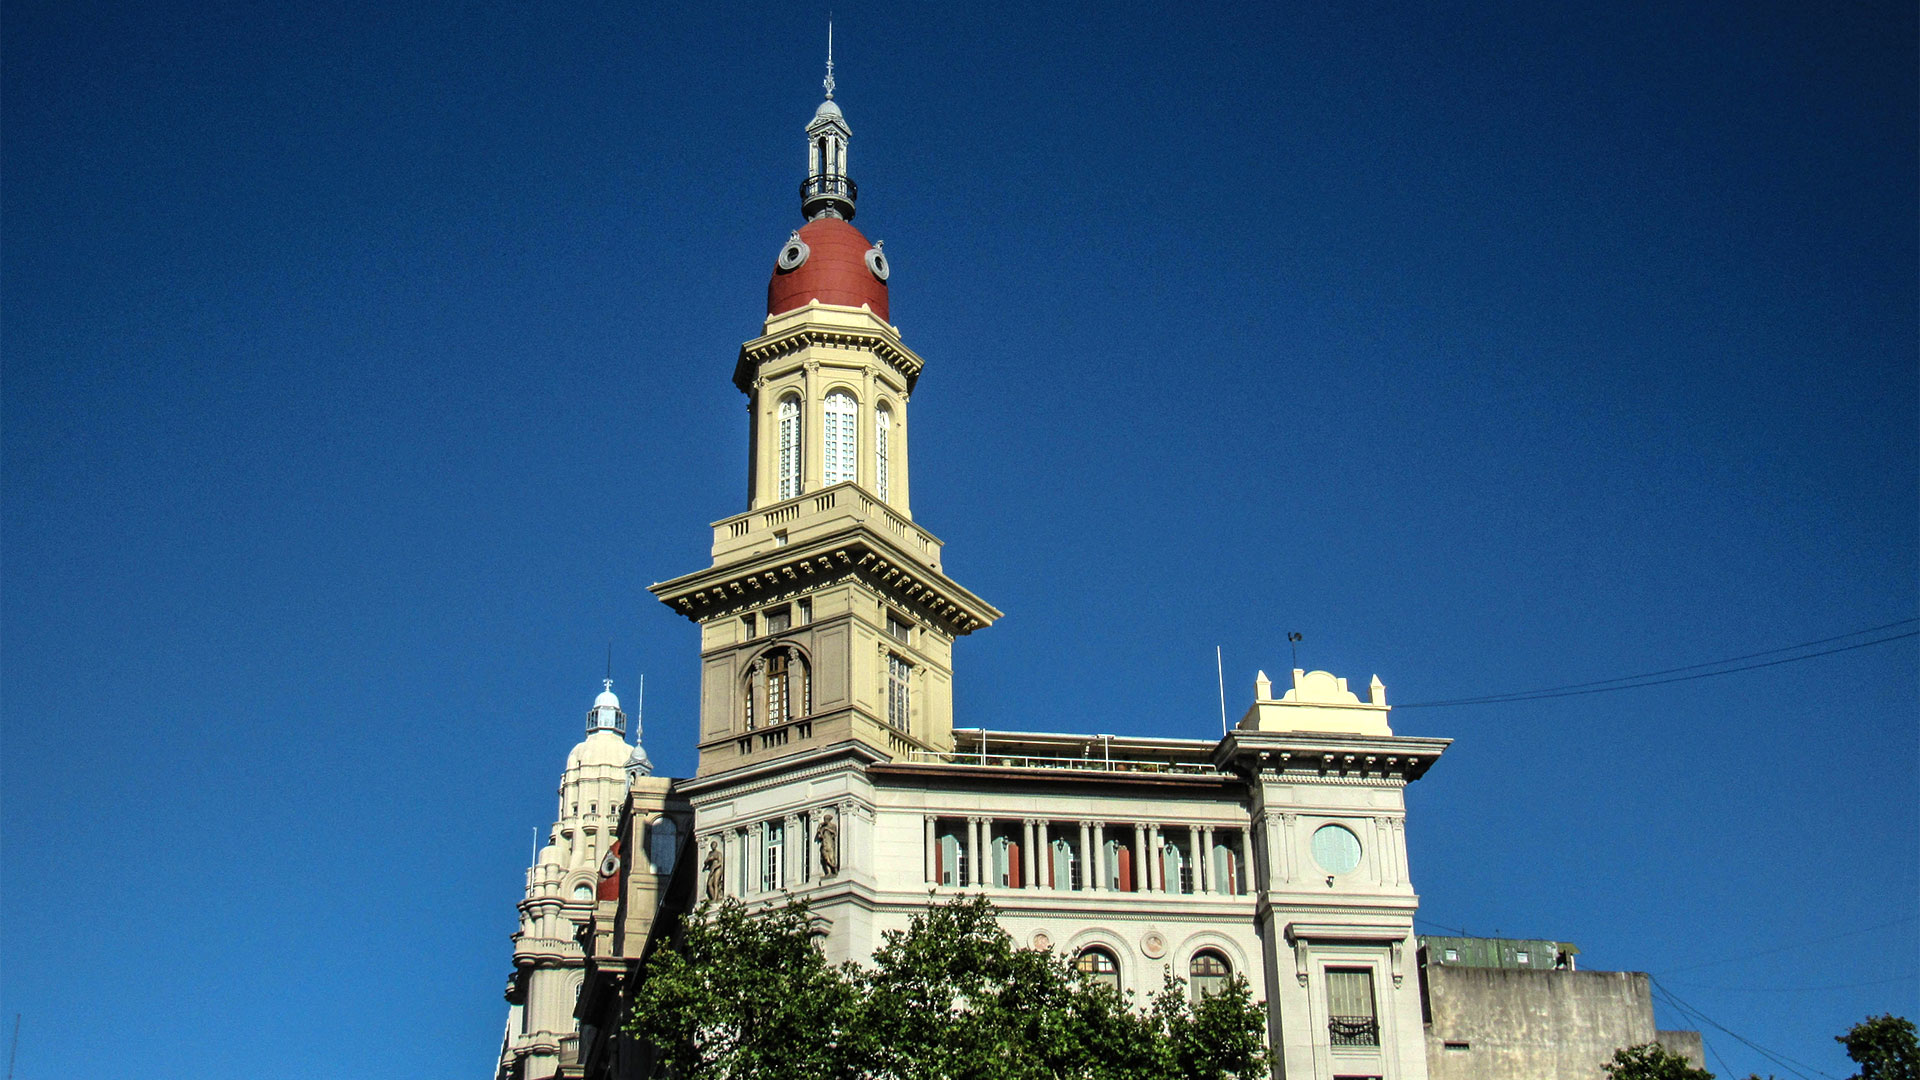 Una fachada emblemática como pocas: la cúpula del departamento que se vende está a la altura de la Avenida de Mayo y Luis Sáenz Peña